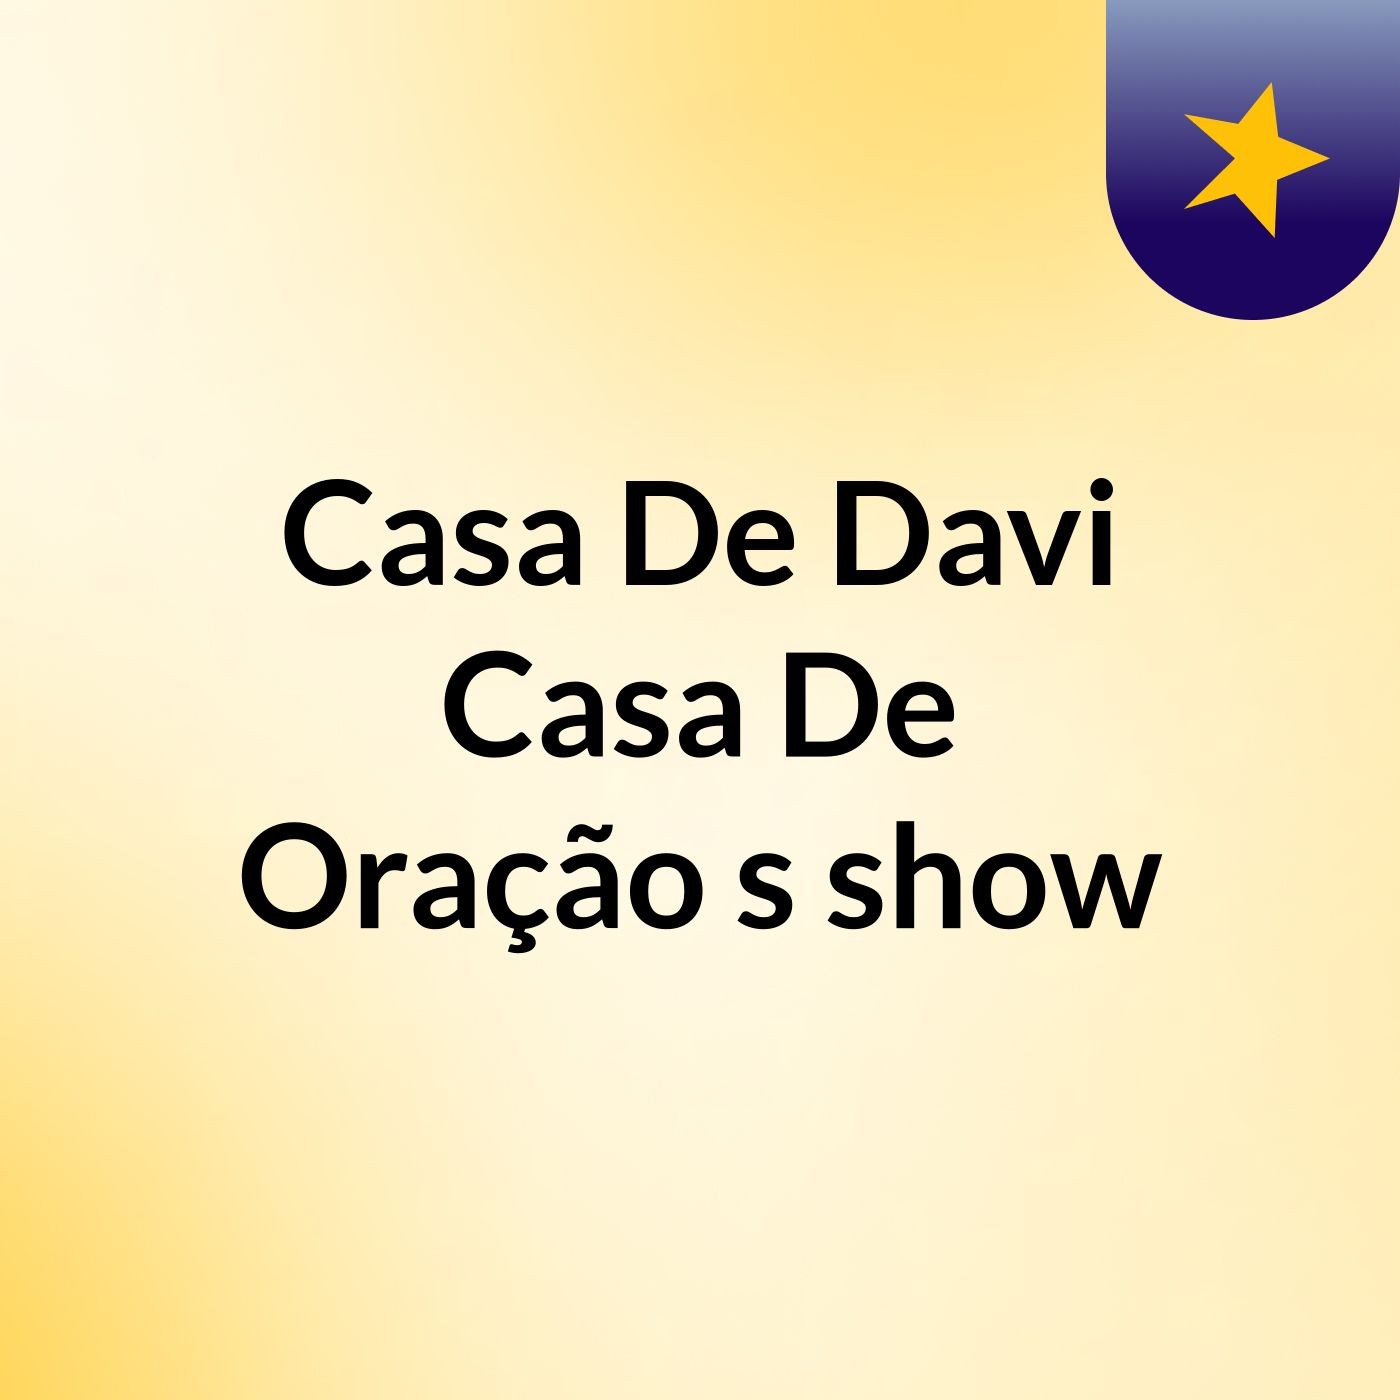 Casa De Davi, Casa De Oração's show